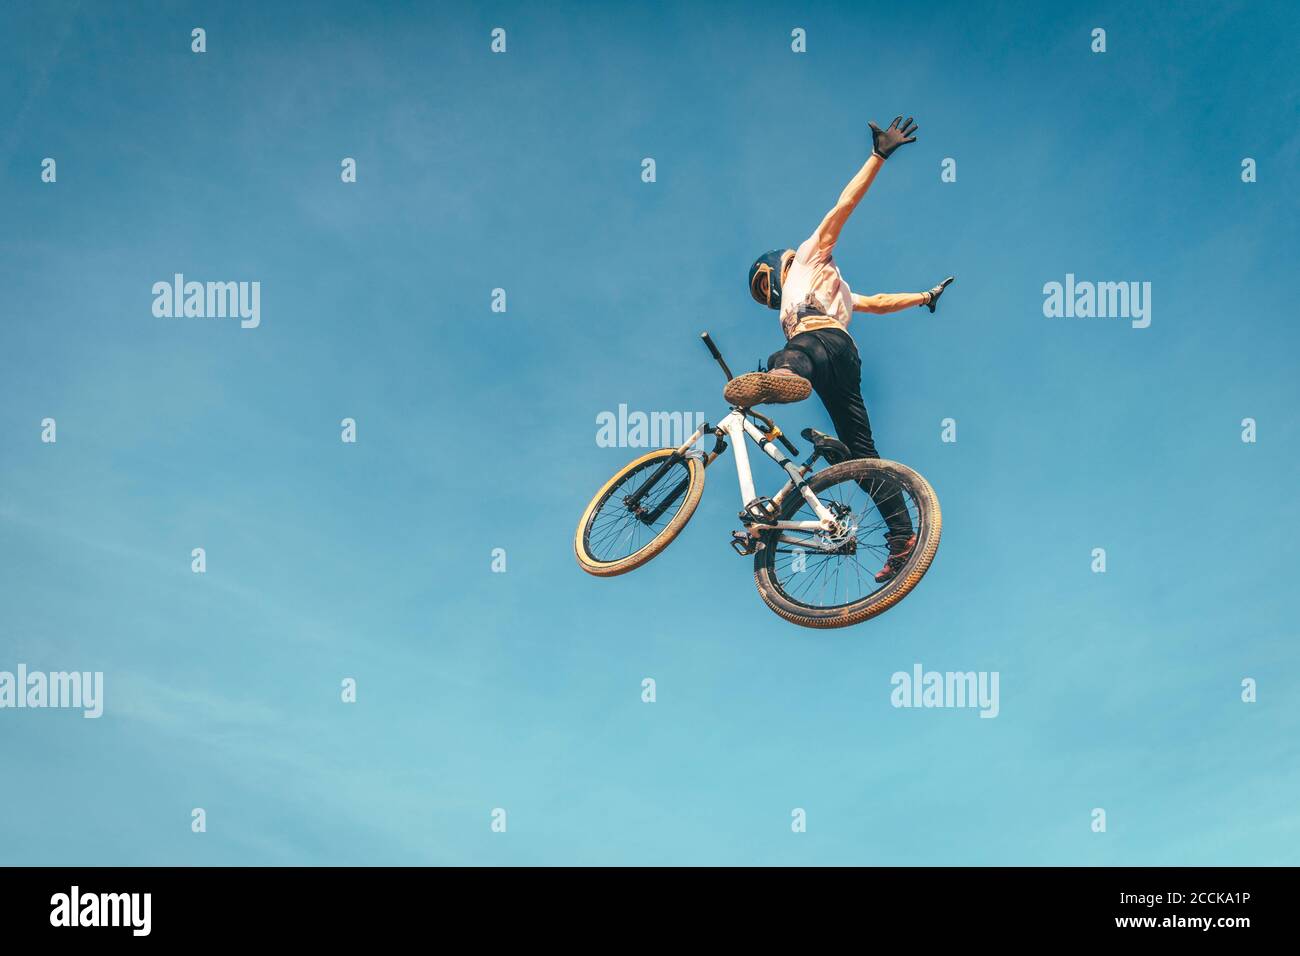 Sorgloser Mann mit Fahrrad gegen blauen Himmel während Stunt durchführen Sonnenuntergang Stockfoto